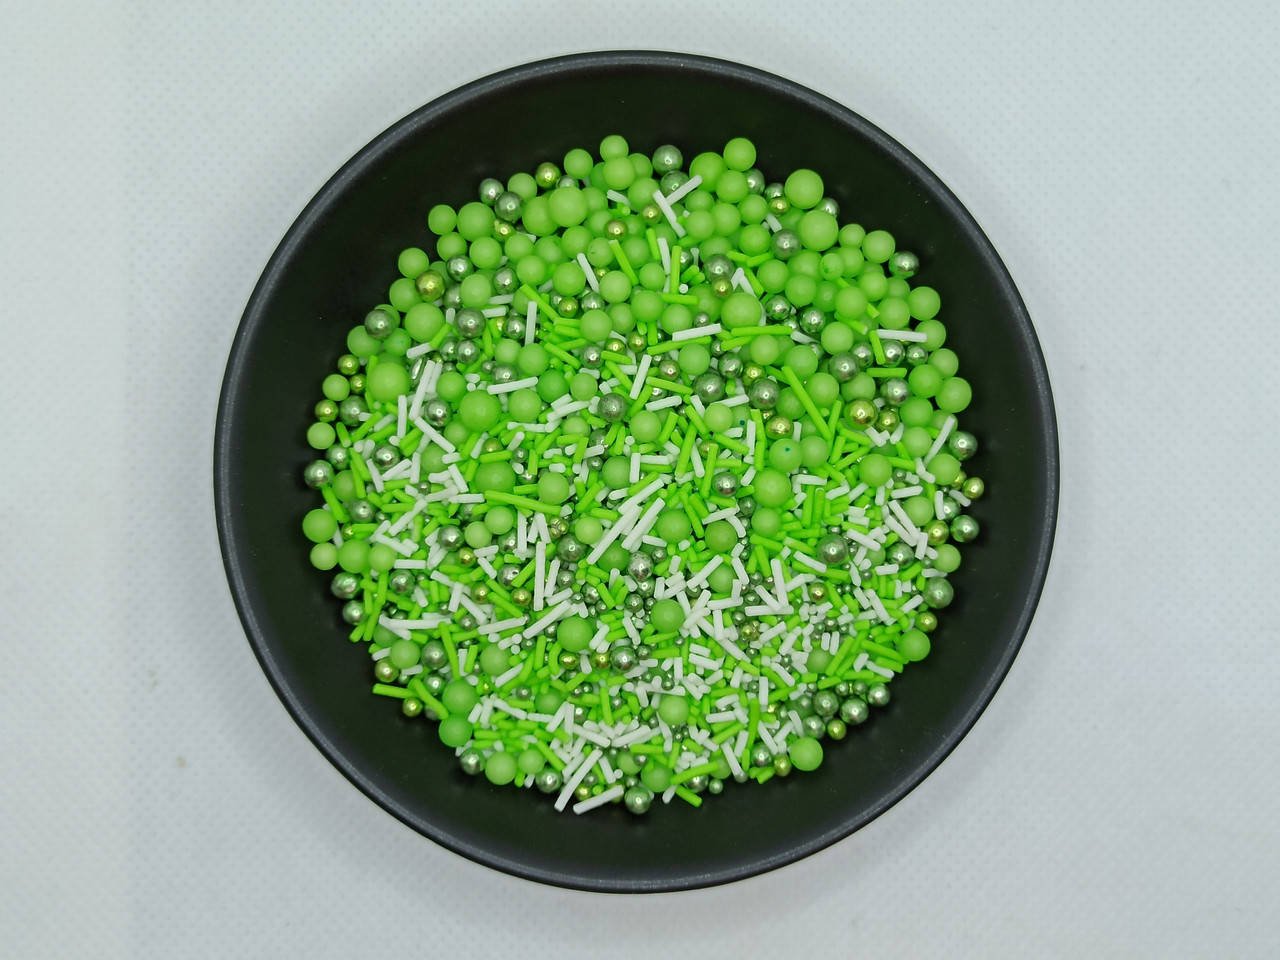 

Кондитерская посыпка сахарная Мини микс "Зеленый" - 50 грамм, Разные цвета